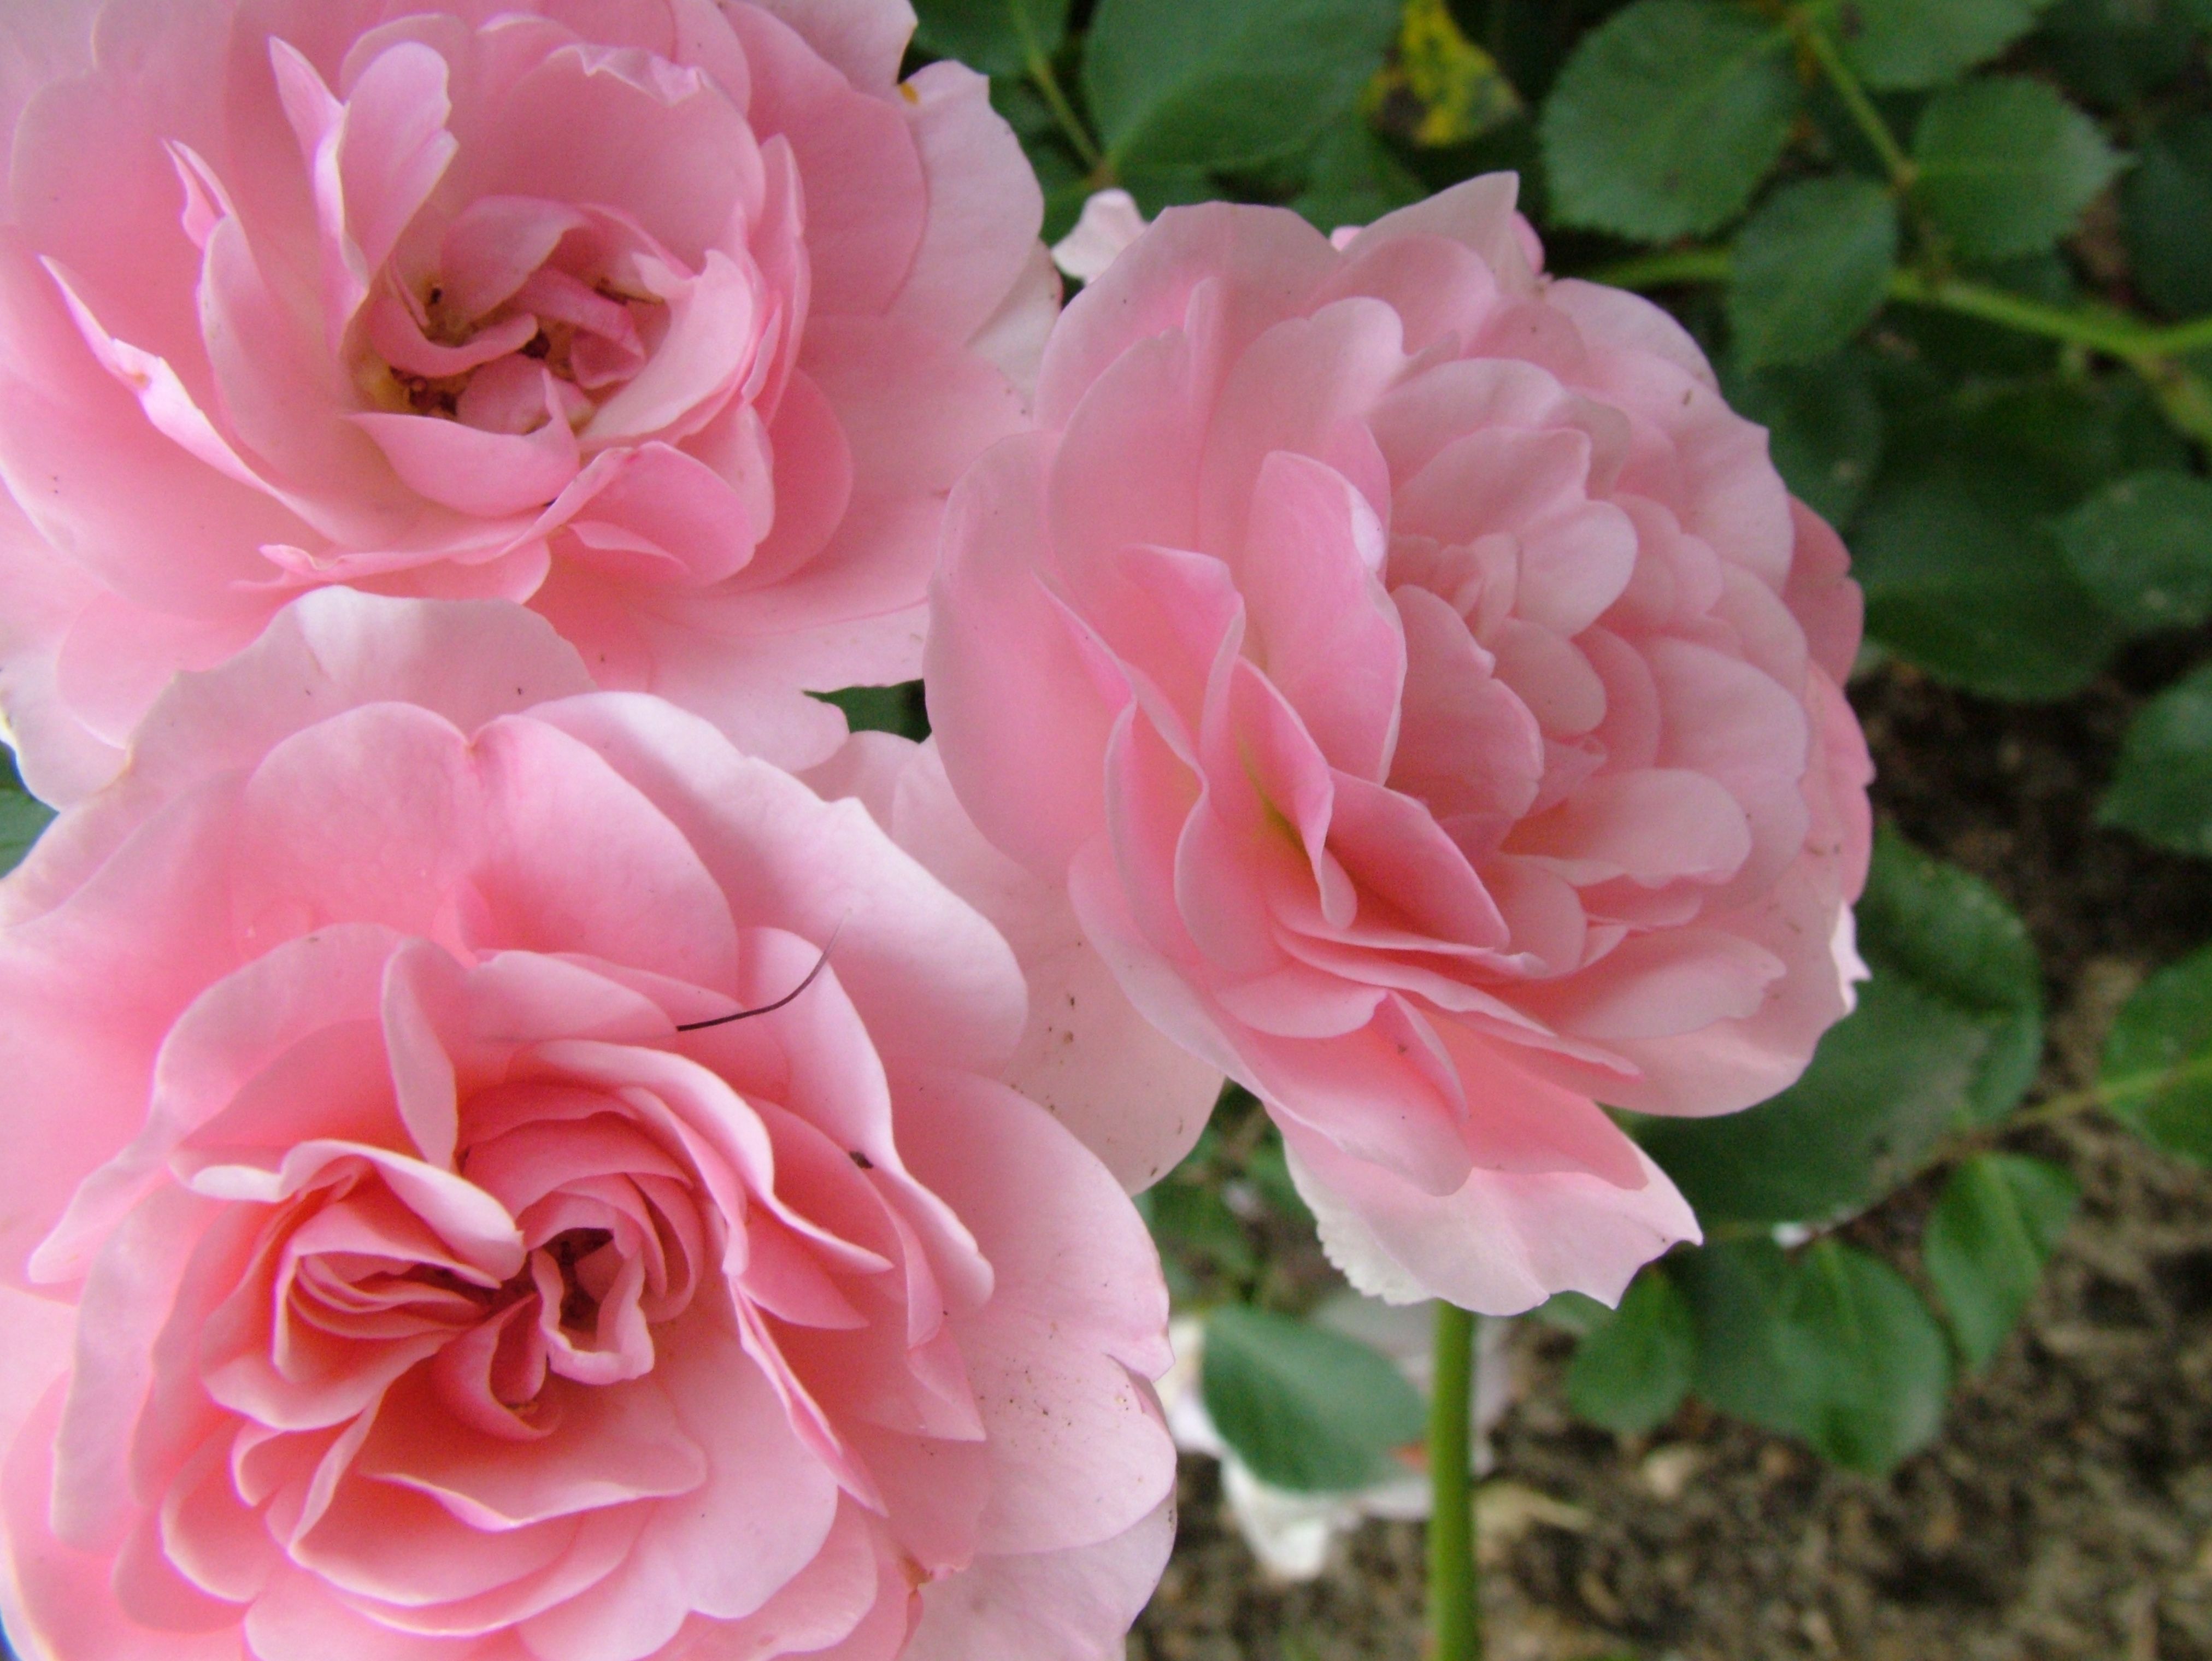 Rose Flowers Image Free Download - KibrisPDR